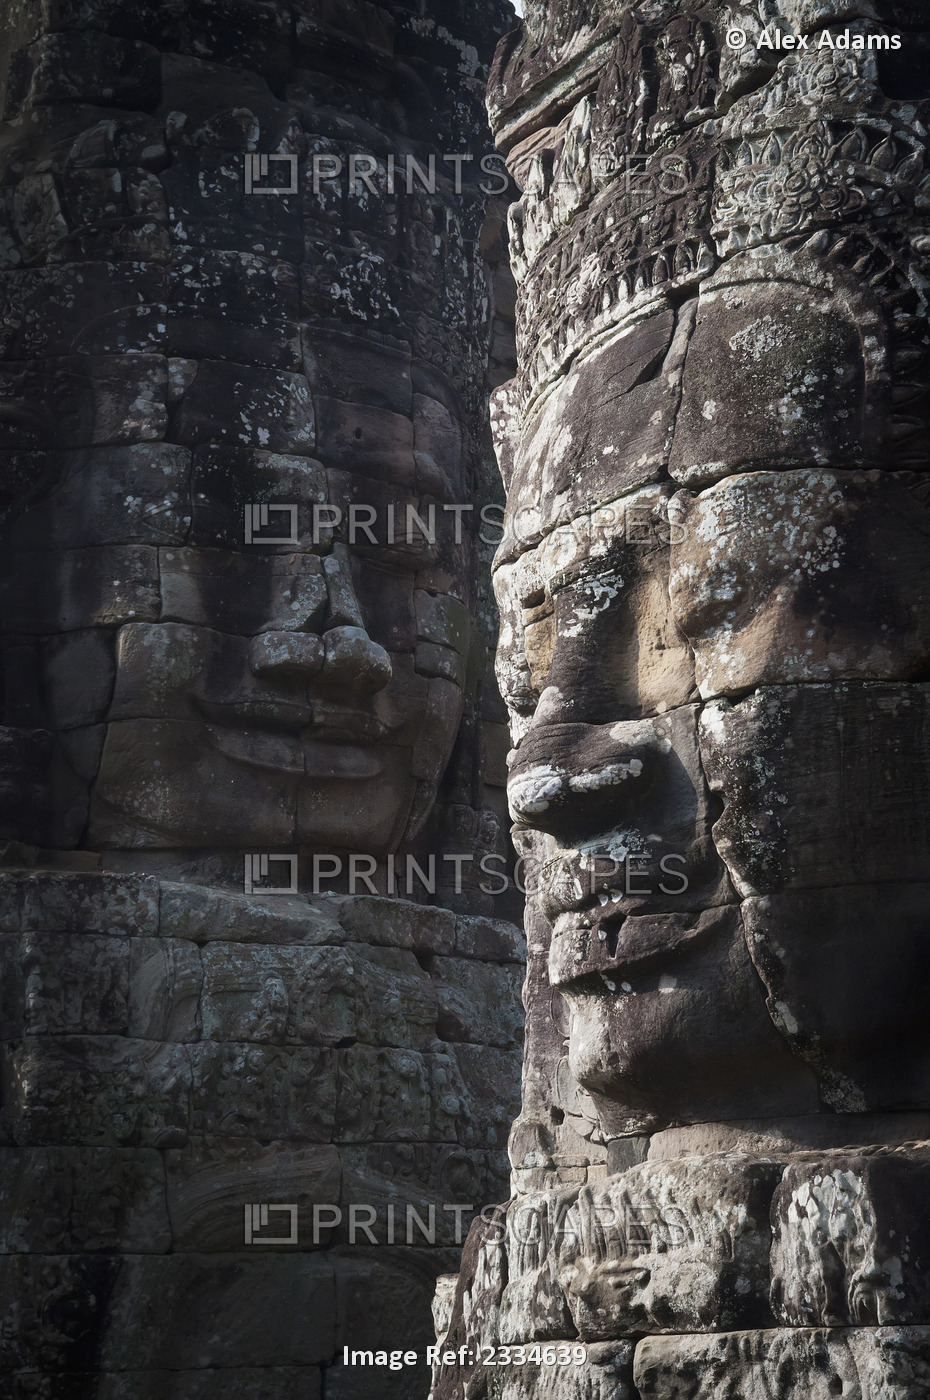 Face sculptures on stone walls at angkor wat;Cambodia